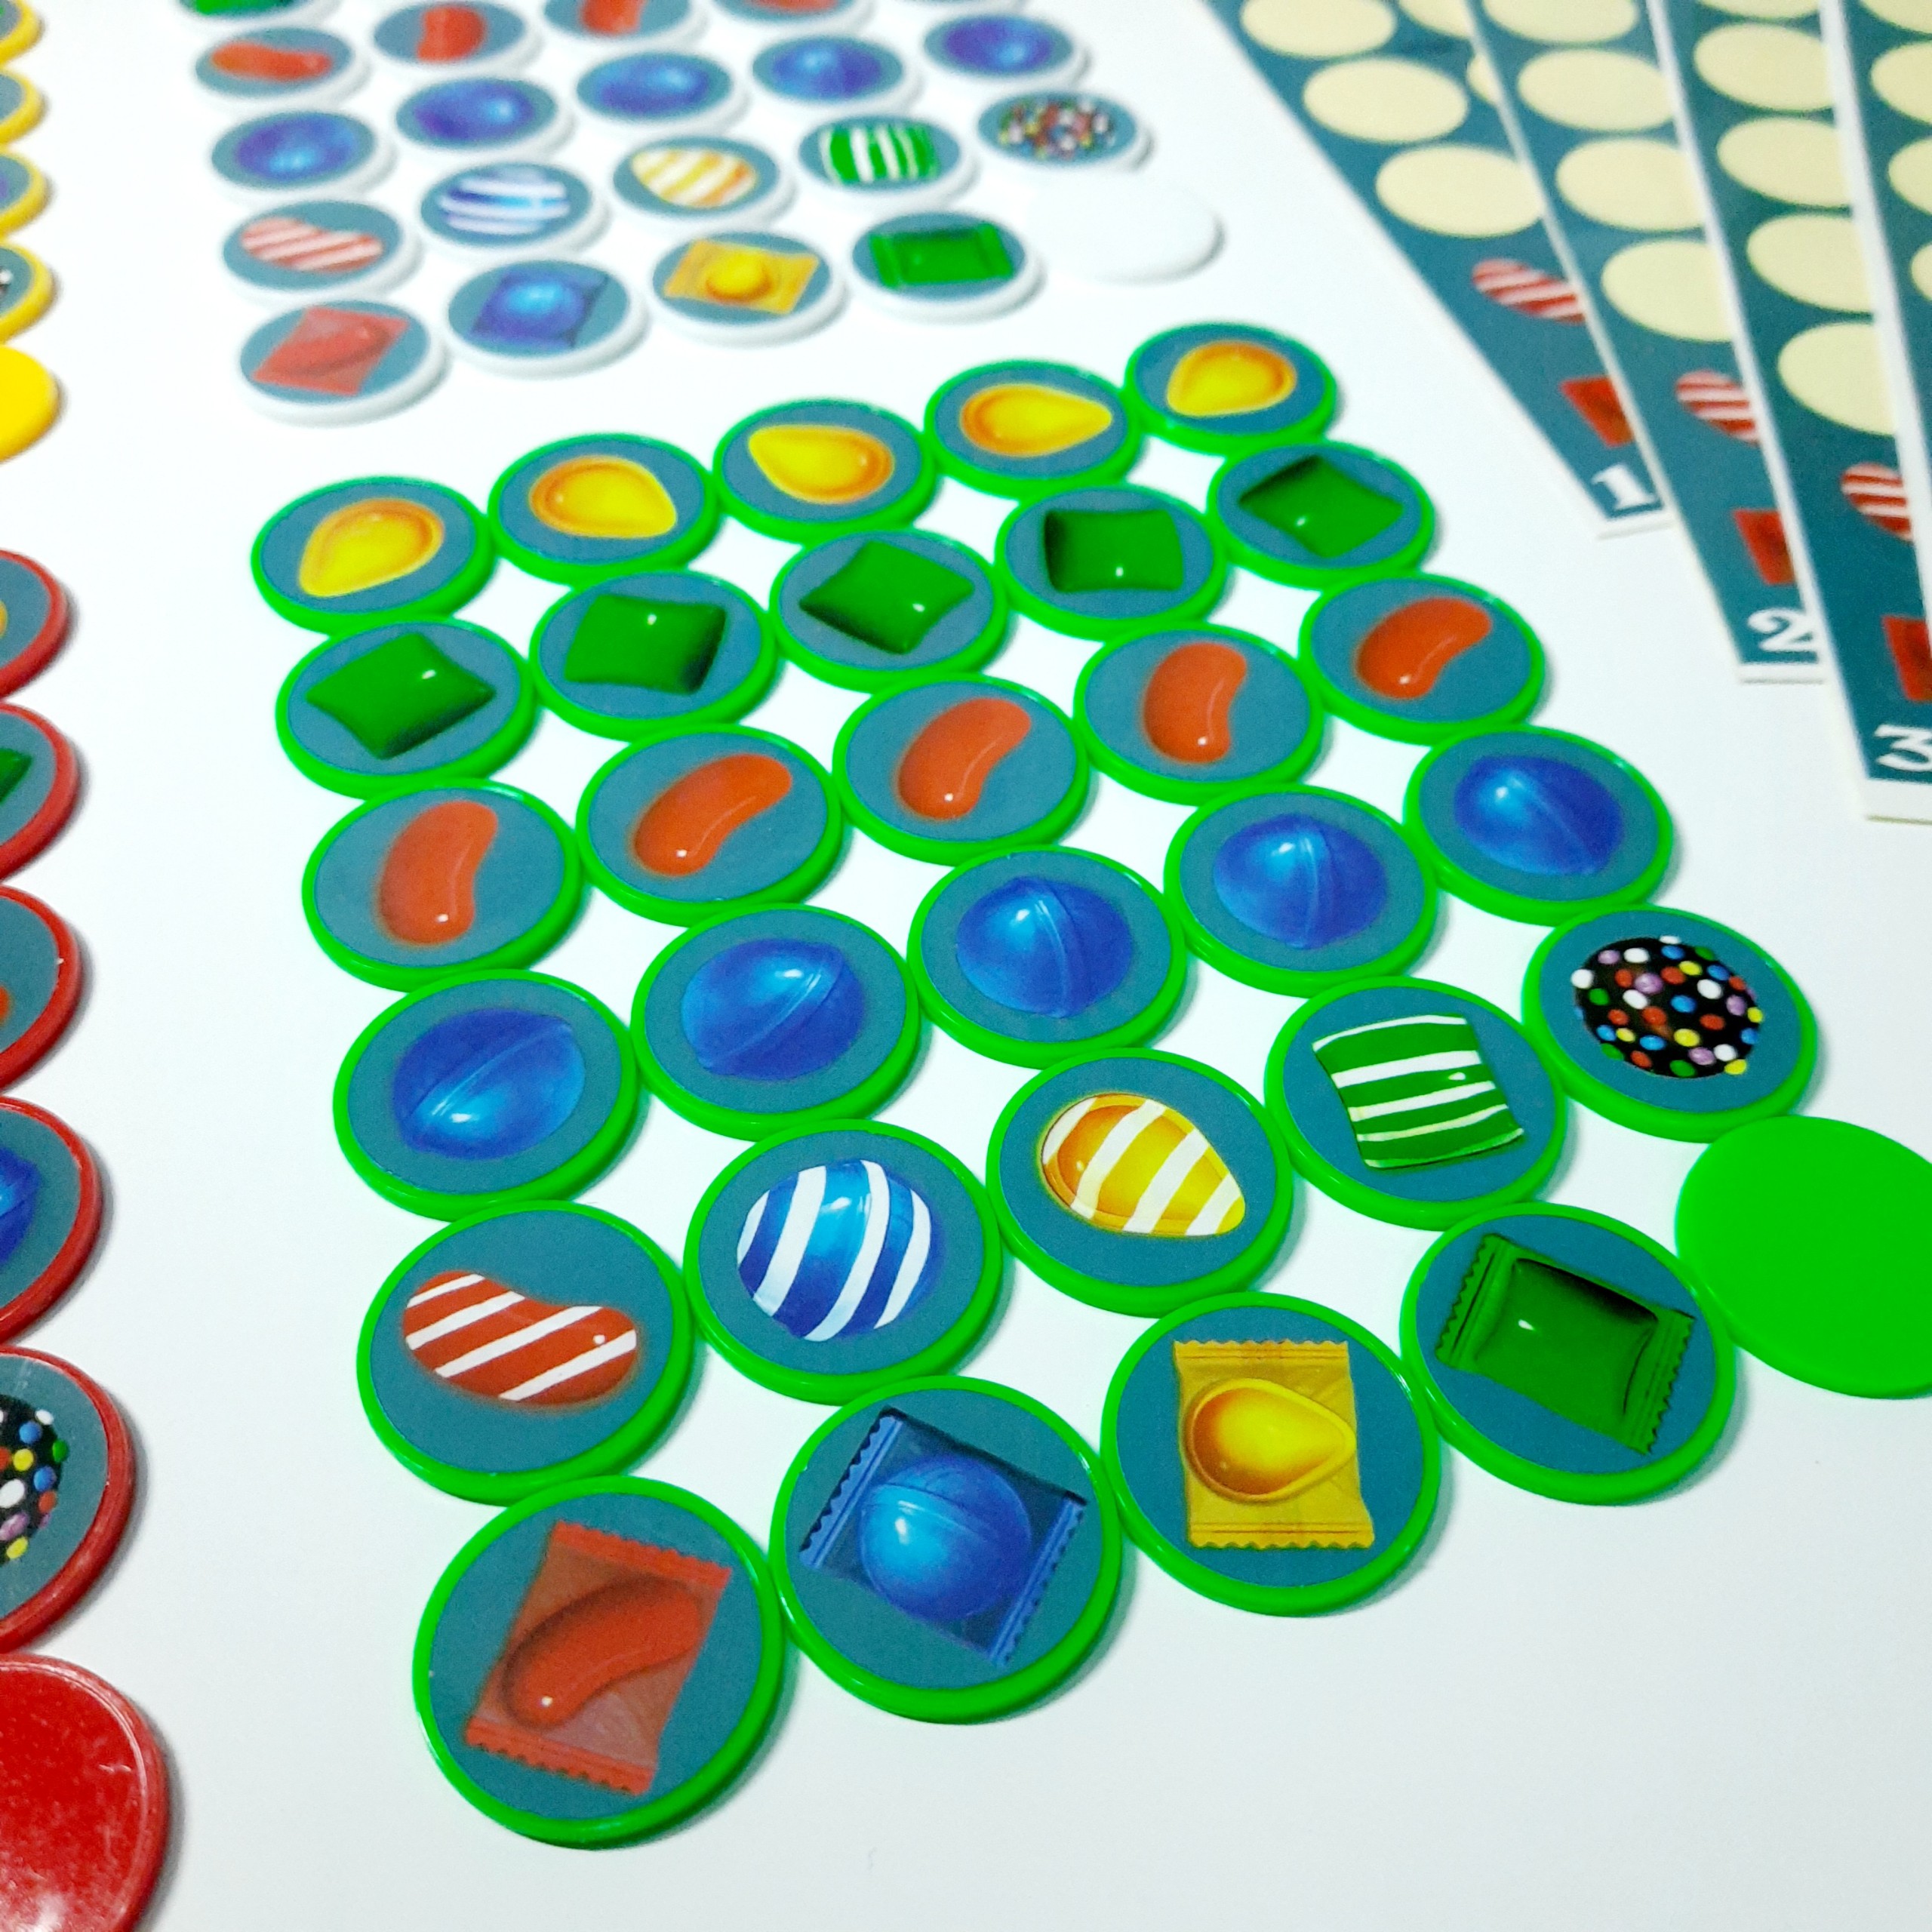 Board game-Candy Crush Foxi-đồ chơi phát triển tư duy-tăng trí nhớ-dễ chơi-vui nhộn